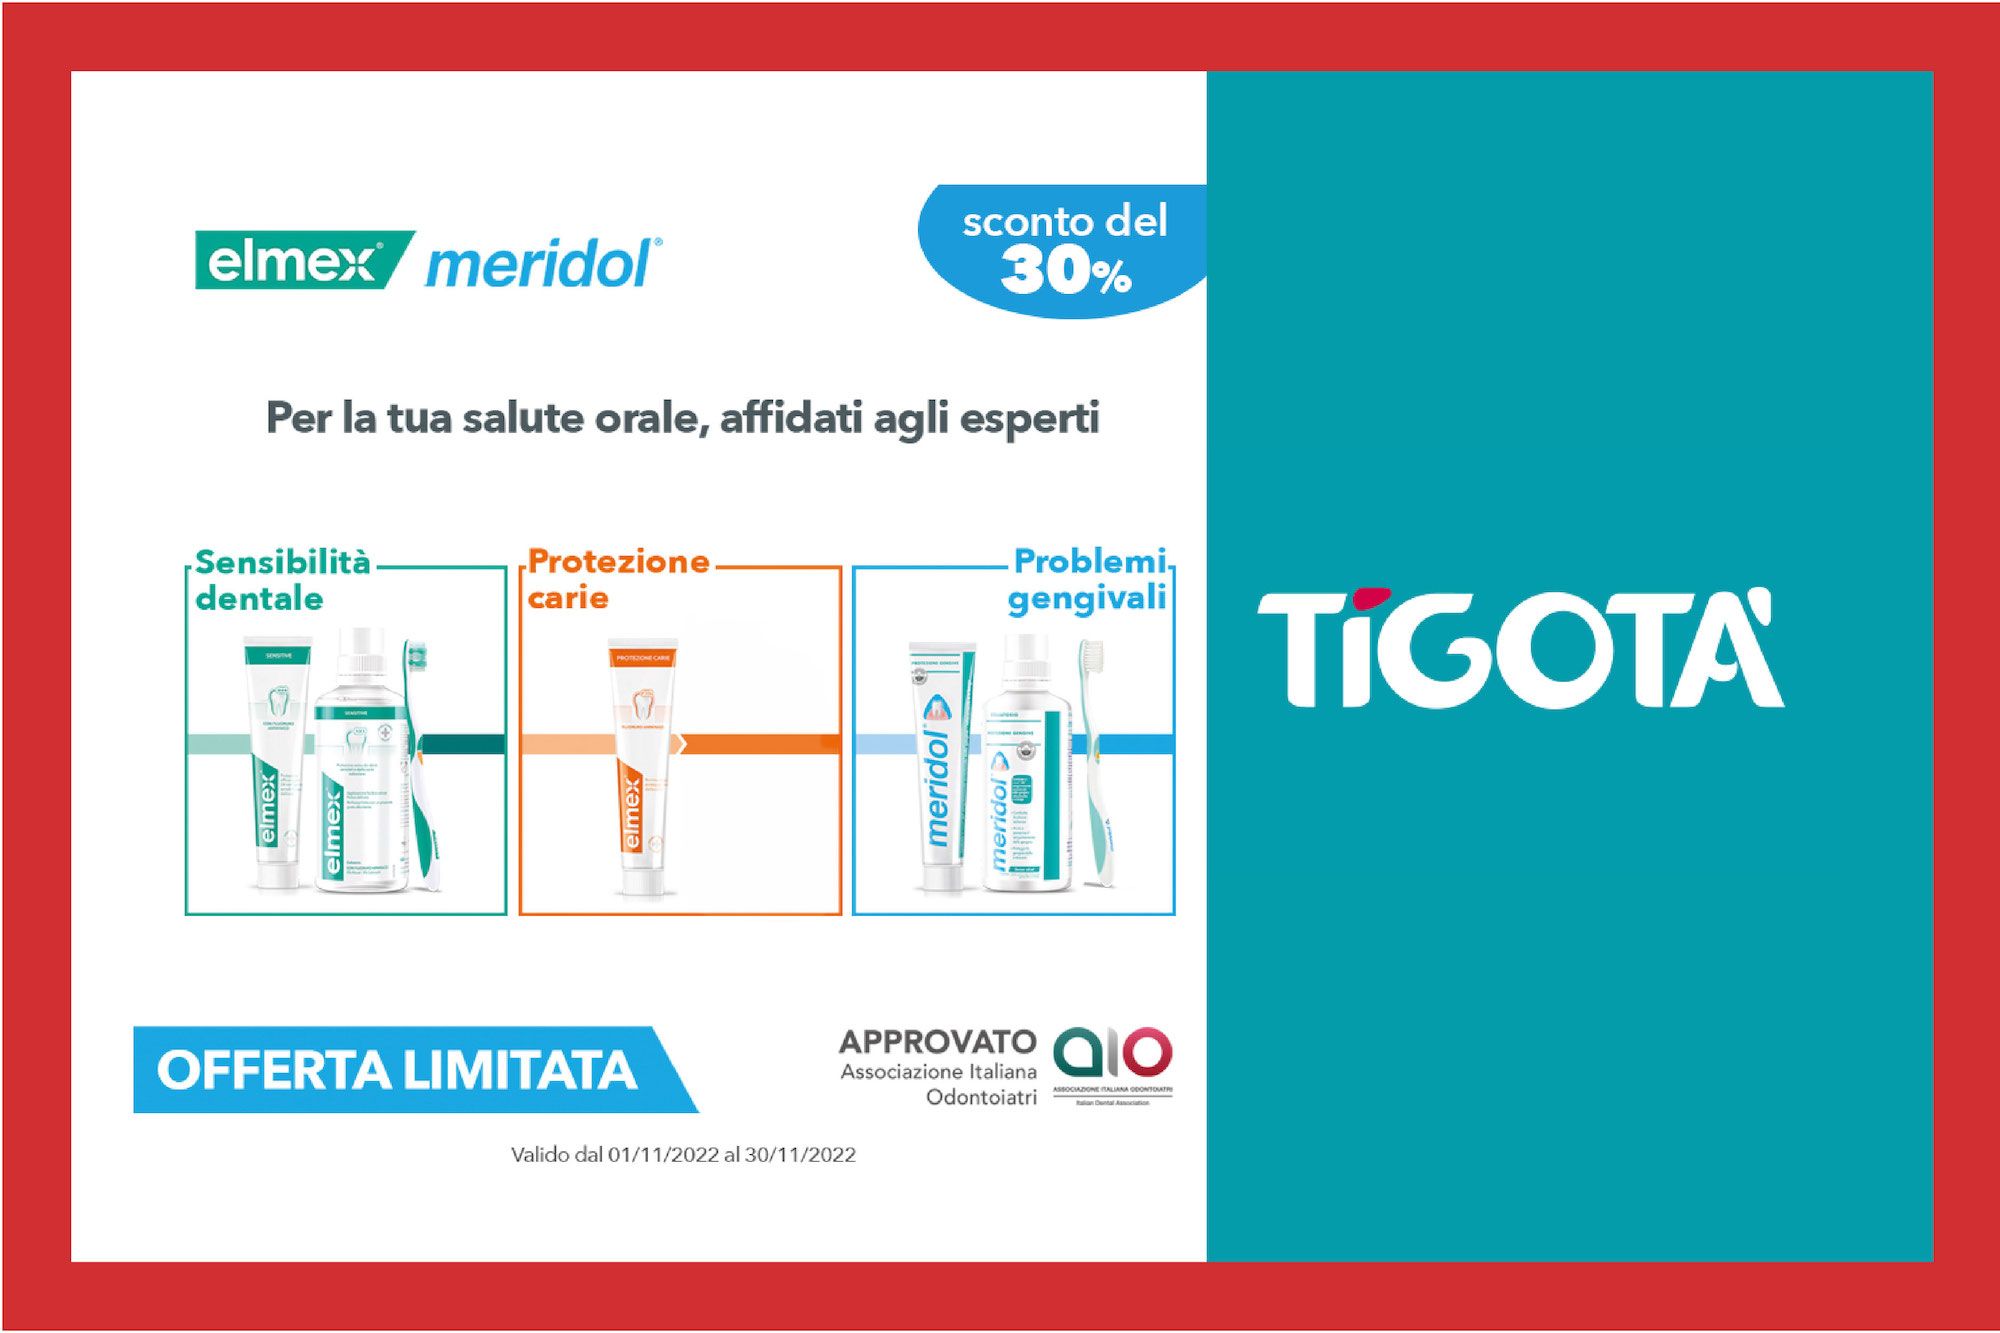 Fai risplendere il tuo sorriso! A novembre da Tigotà trovi tutti i prodotti Elmex e Meridol scontati del 30%!